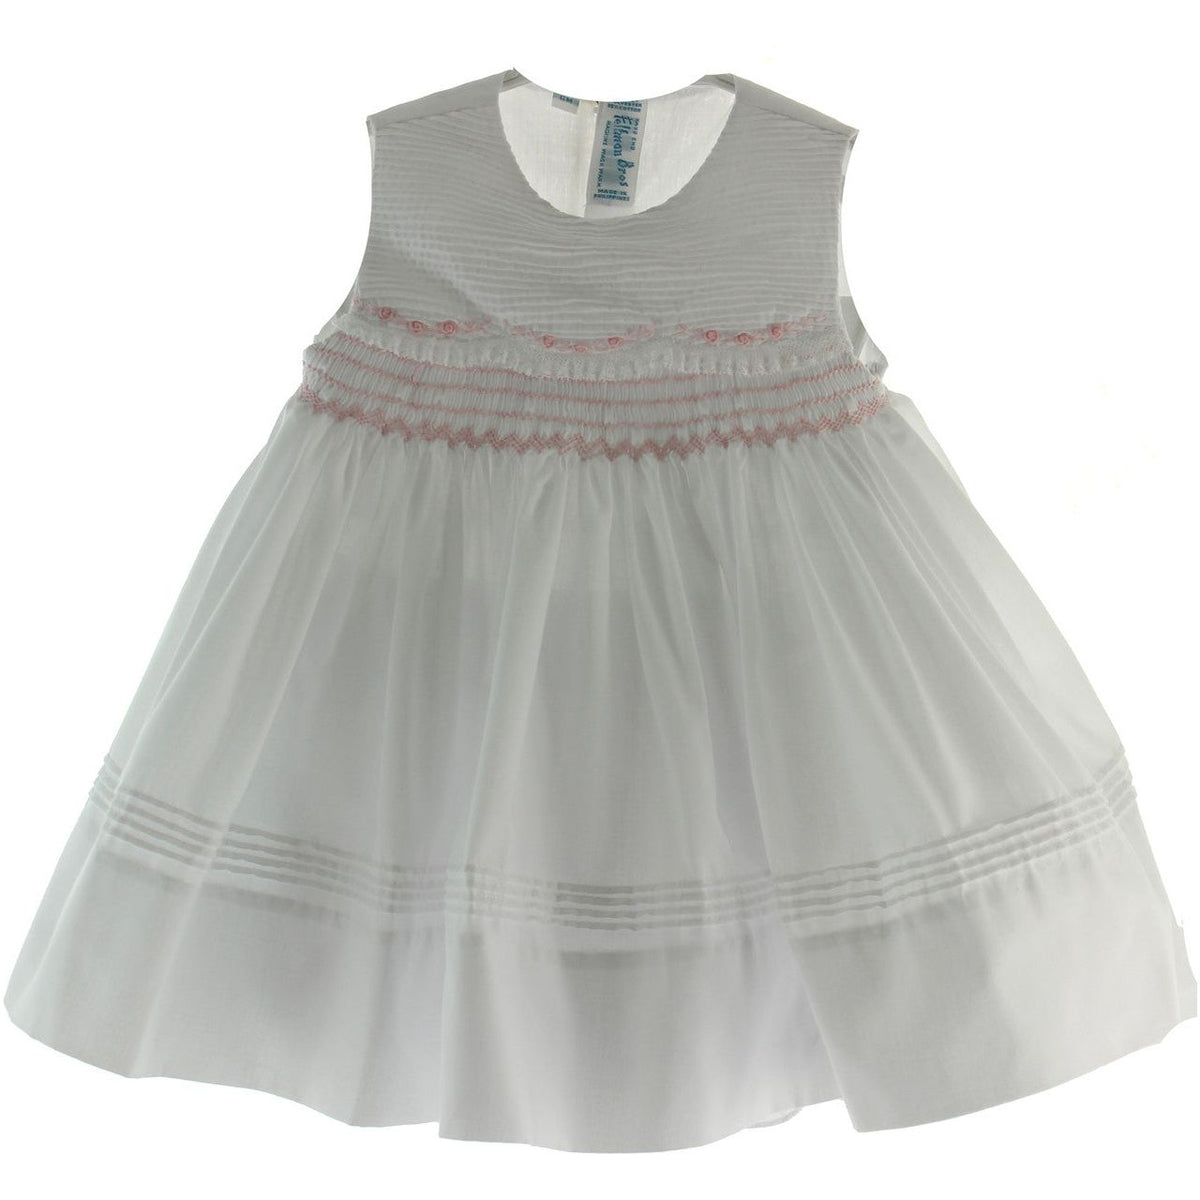 Infant Girls White Sleeveless Portrait Dress